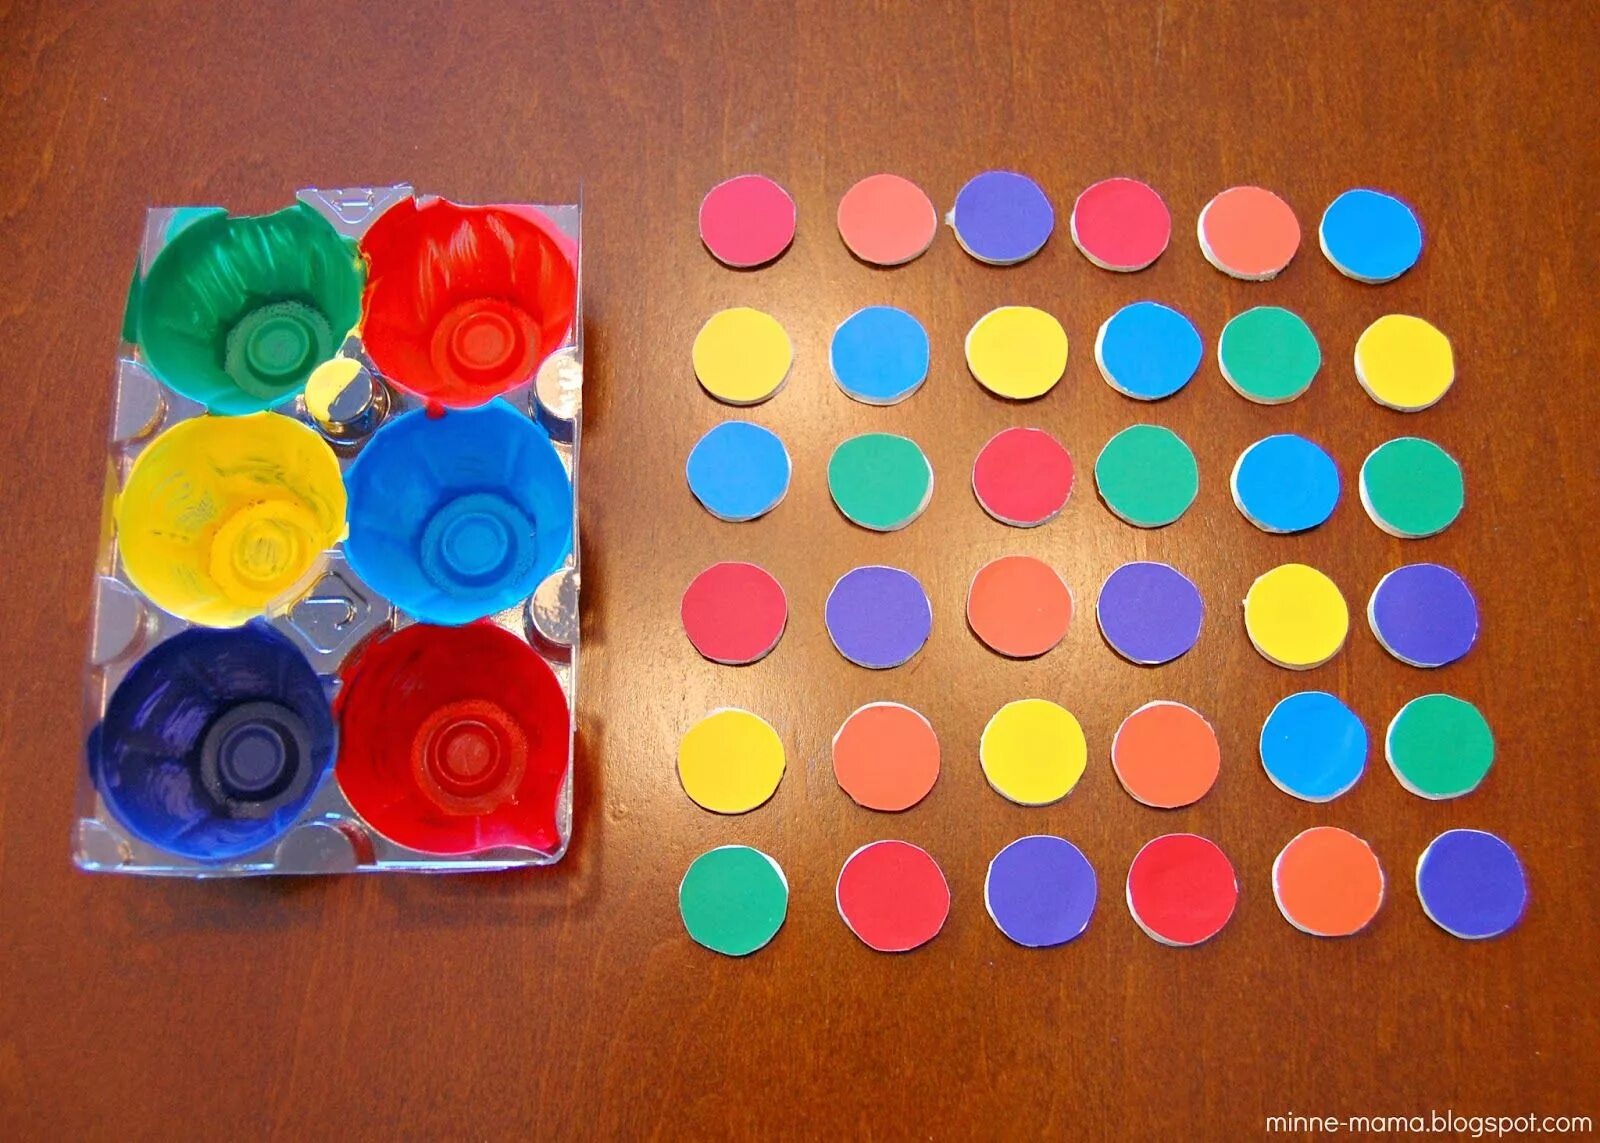 Обучение детей цветам. Игры на изучение цвета. Изучение цветов для детей. Игрушки для изучения цветов. Картинки для изучения цвета.